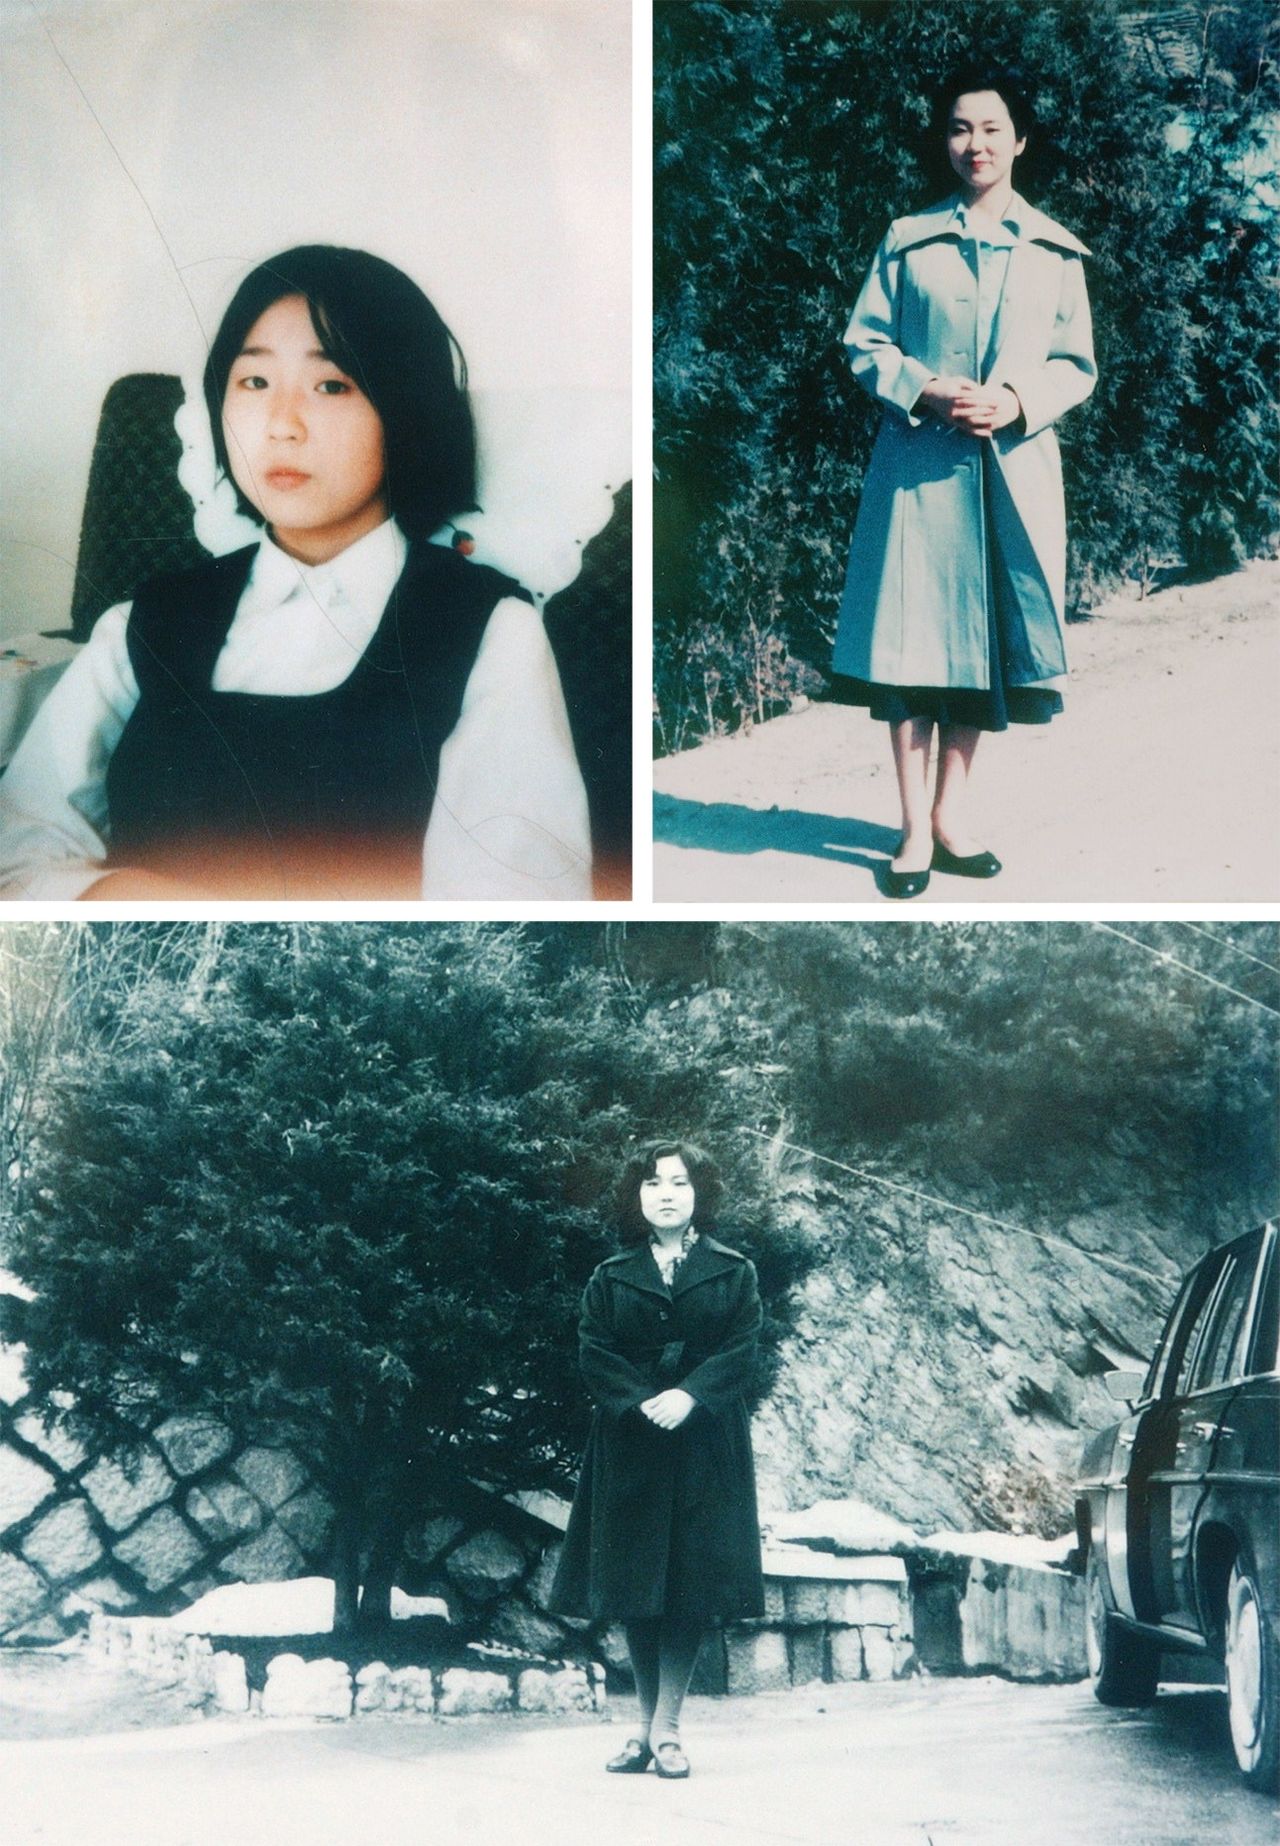 صورة للمختطفة السيدة يوكوتا ميغومي مقدمة من كوريا الشمالية، الصورة مقدمة من يوكوتا شيغيرو (© جيجي برس)